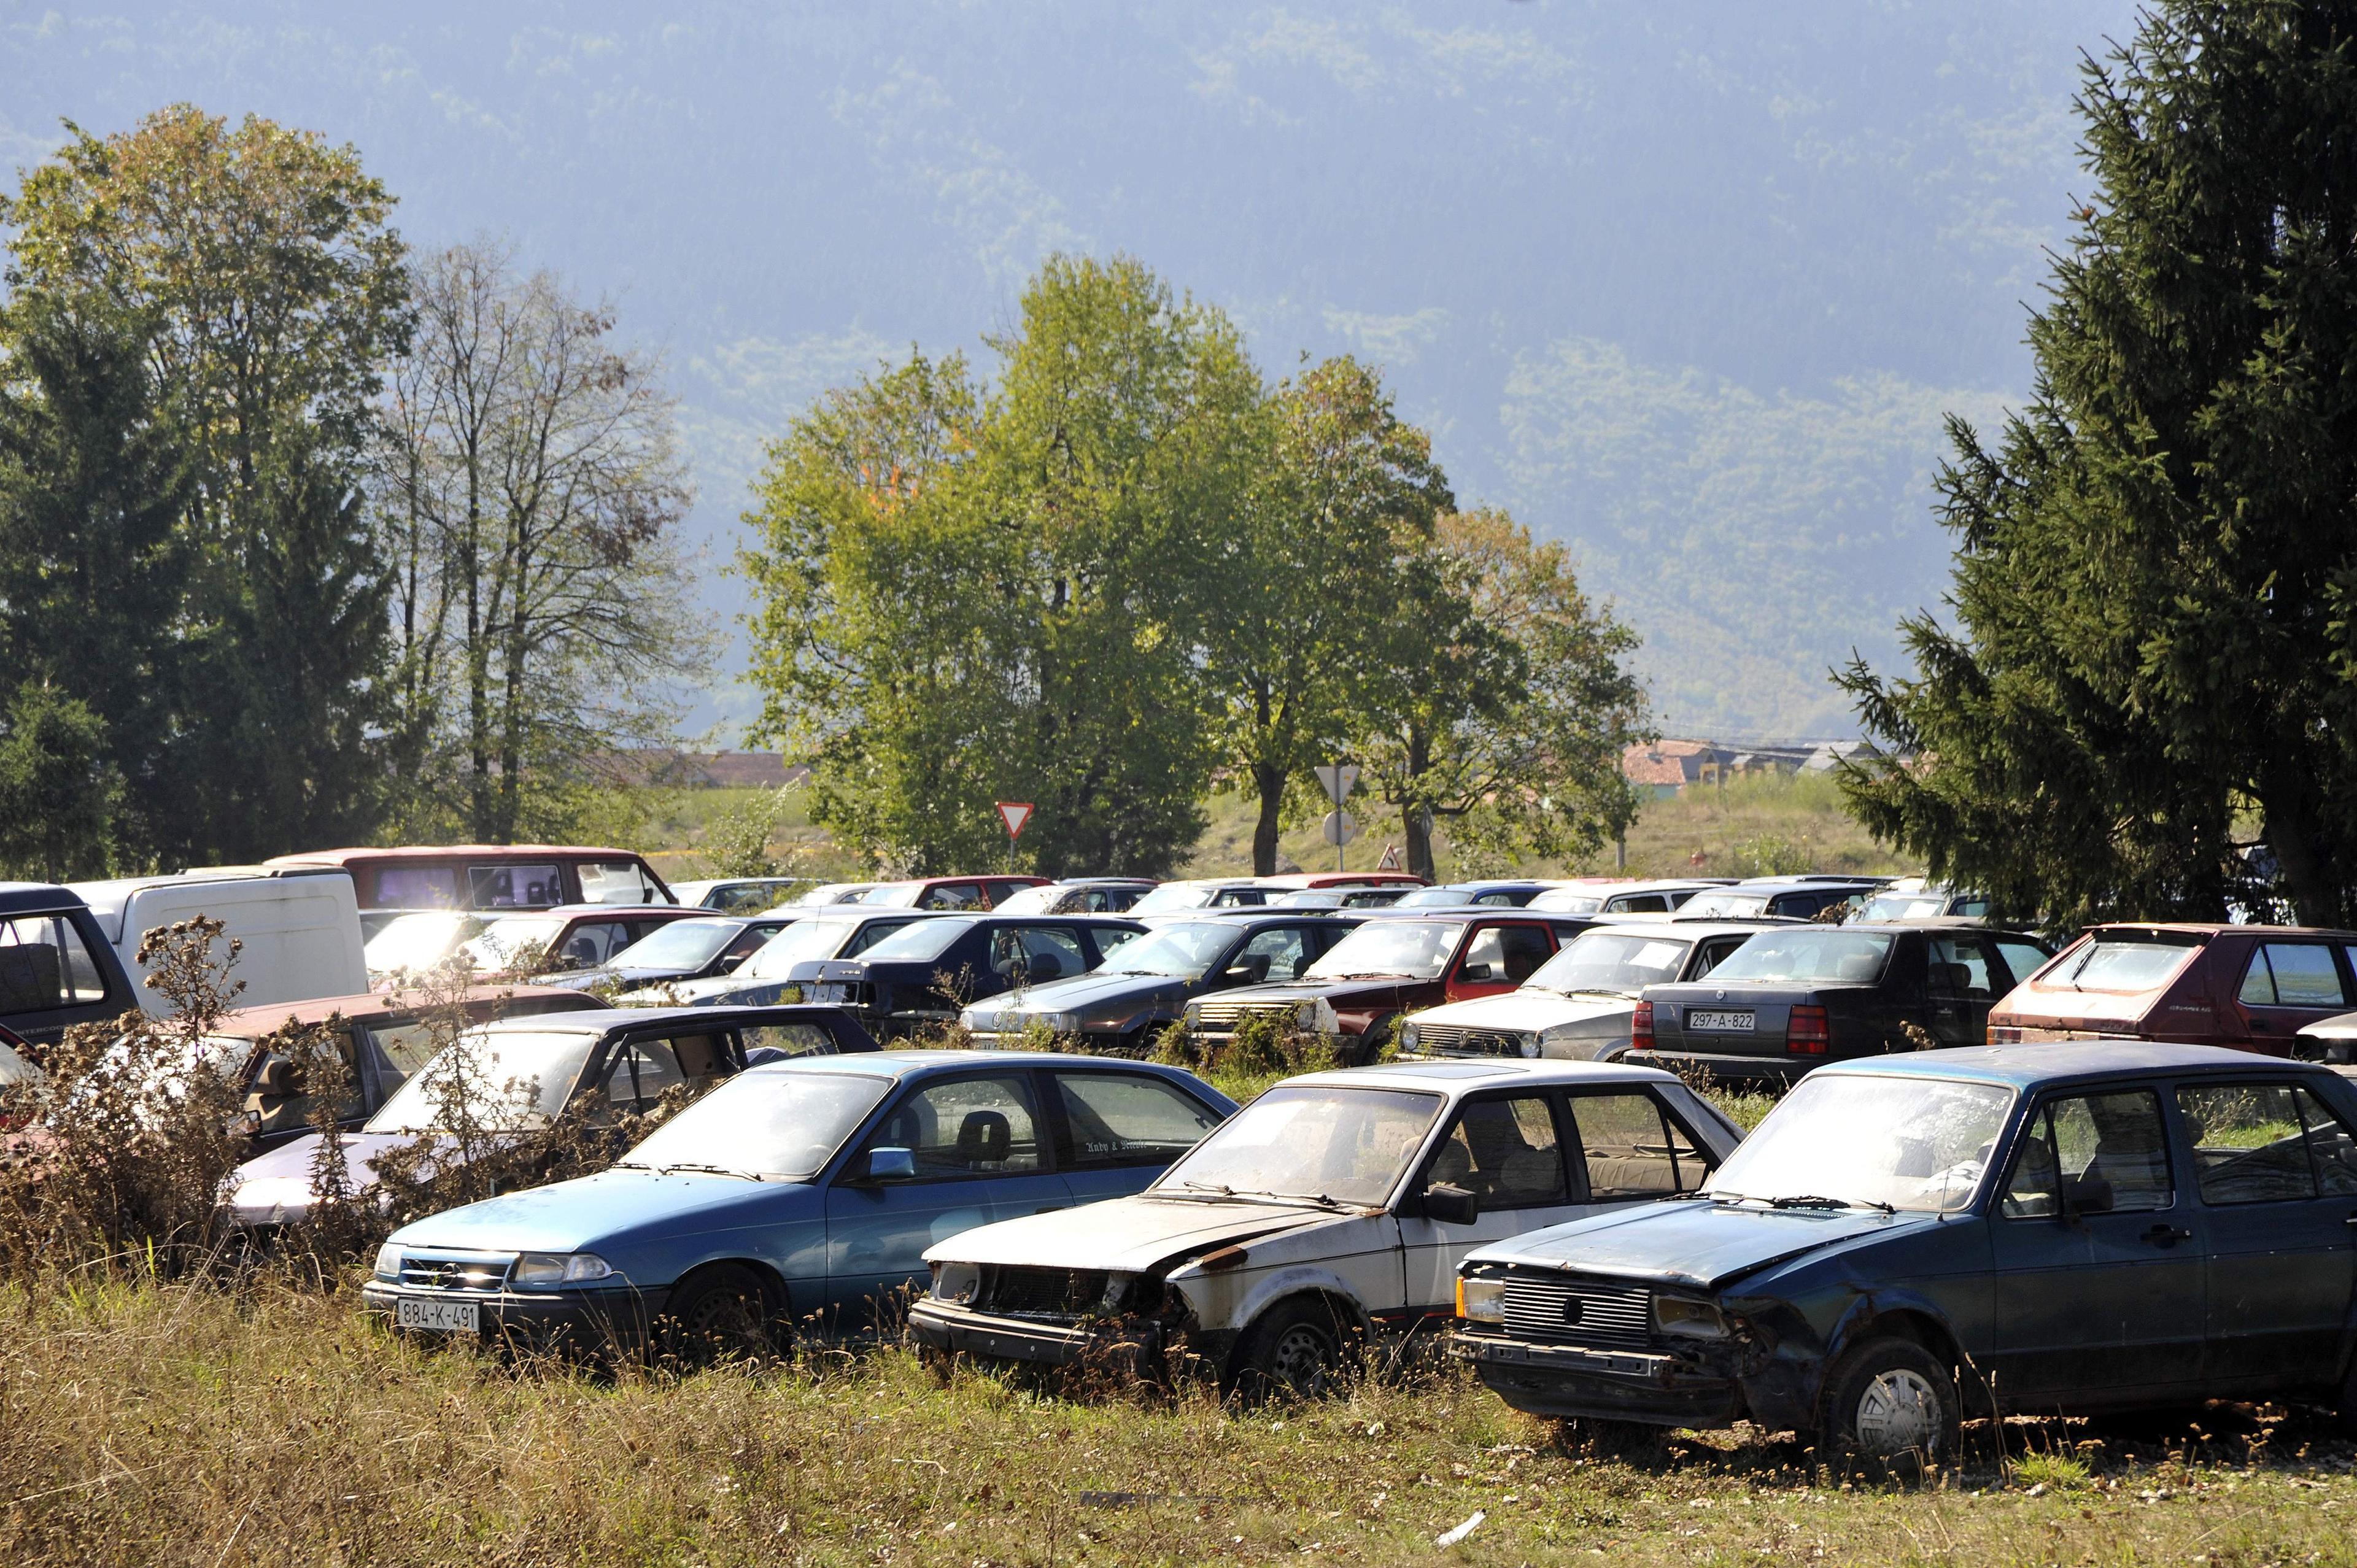 Samo u Sarajevu propada više od 500 auta - Avaz